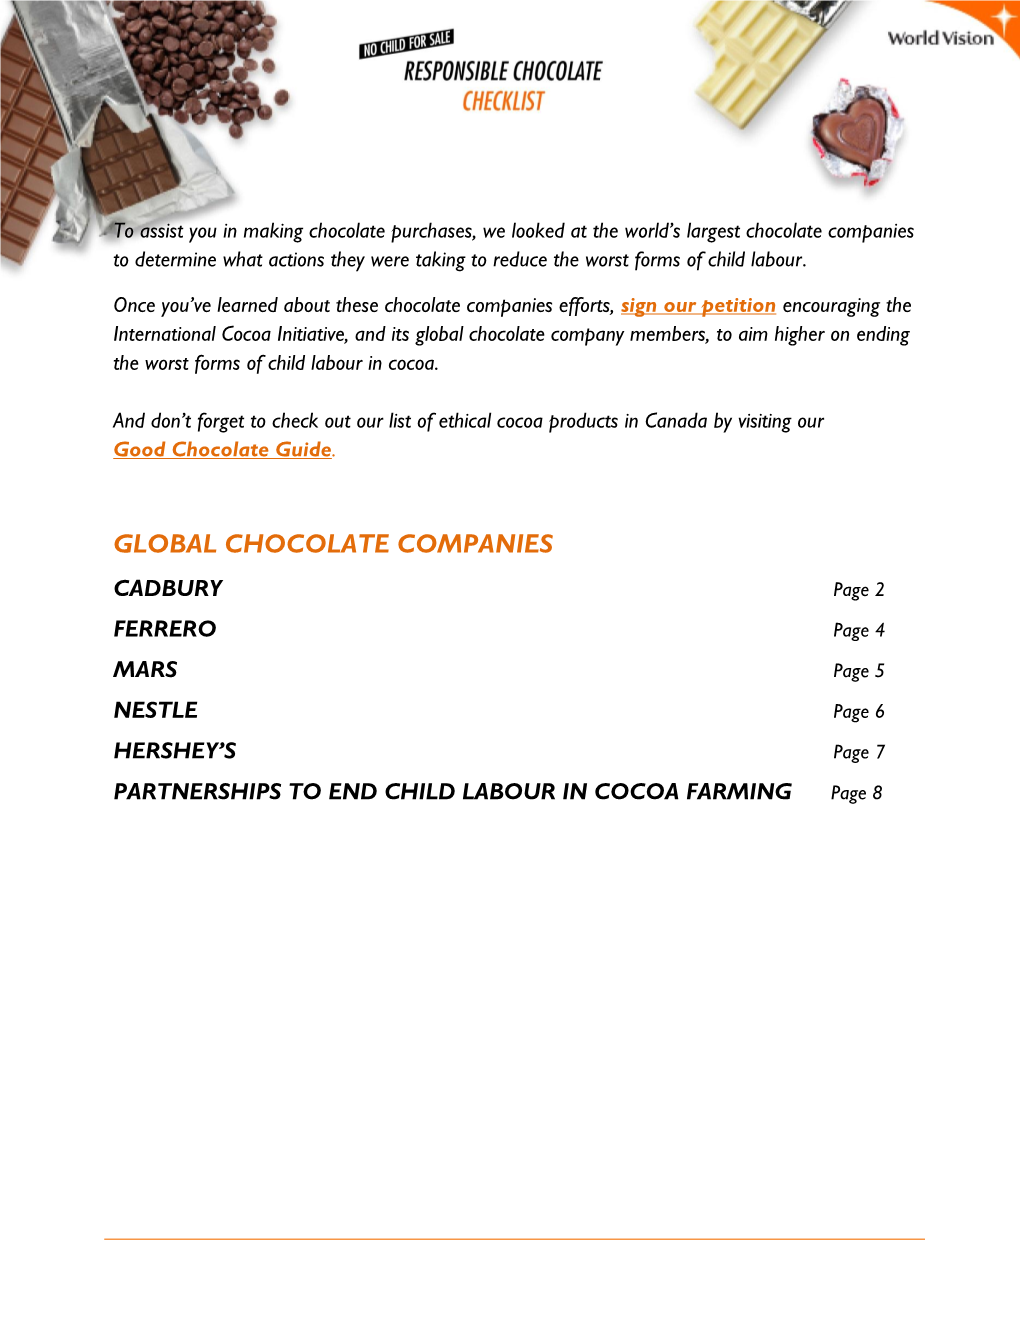 Global Chocolate Companies